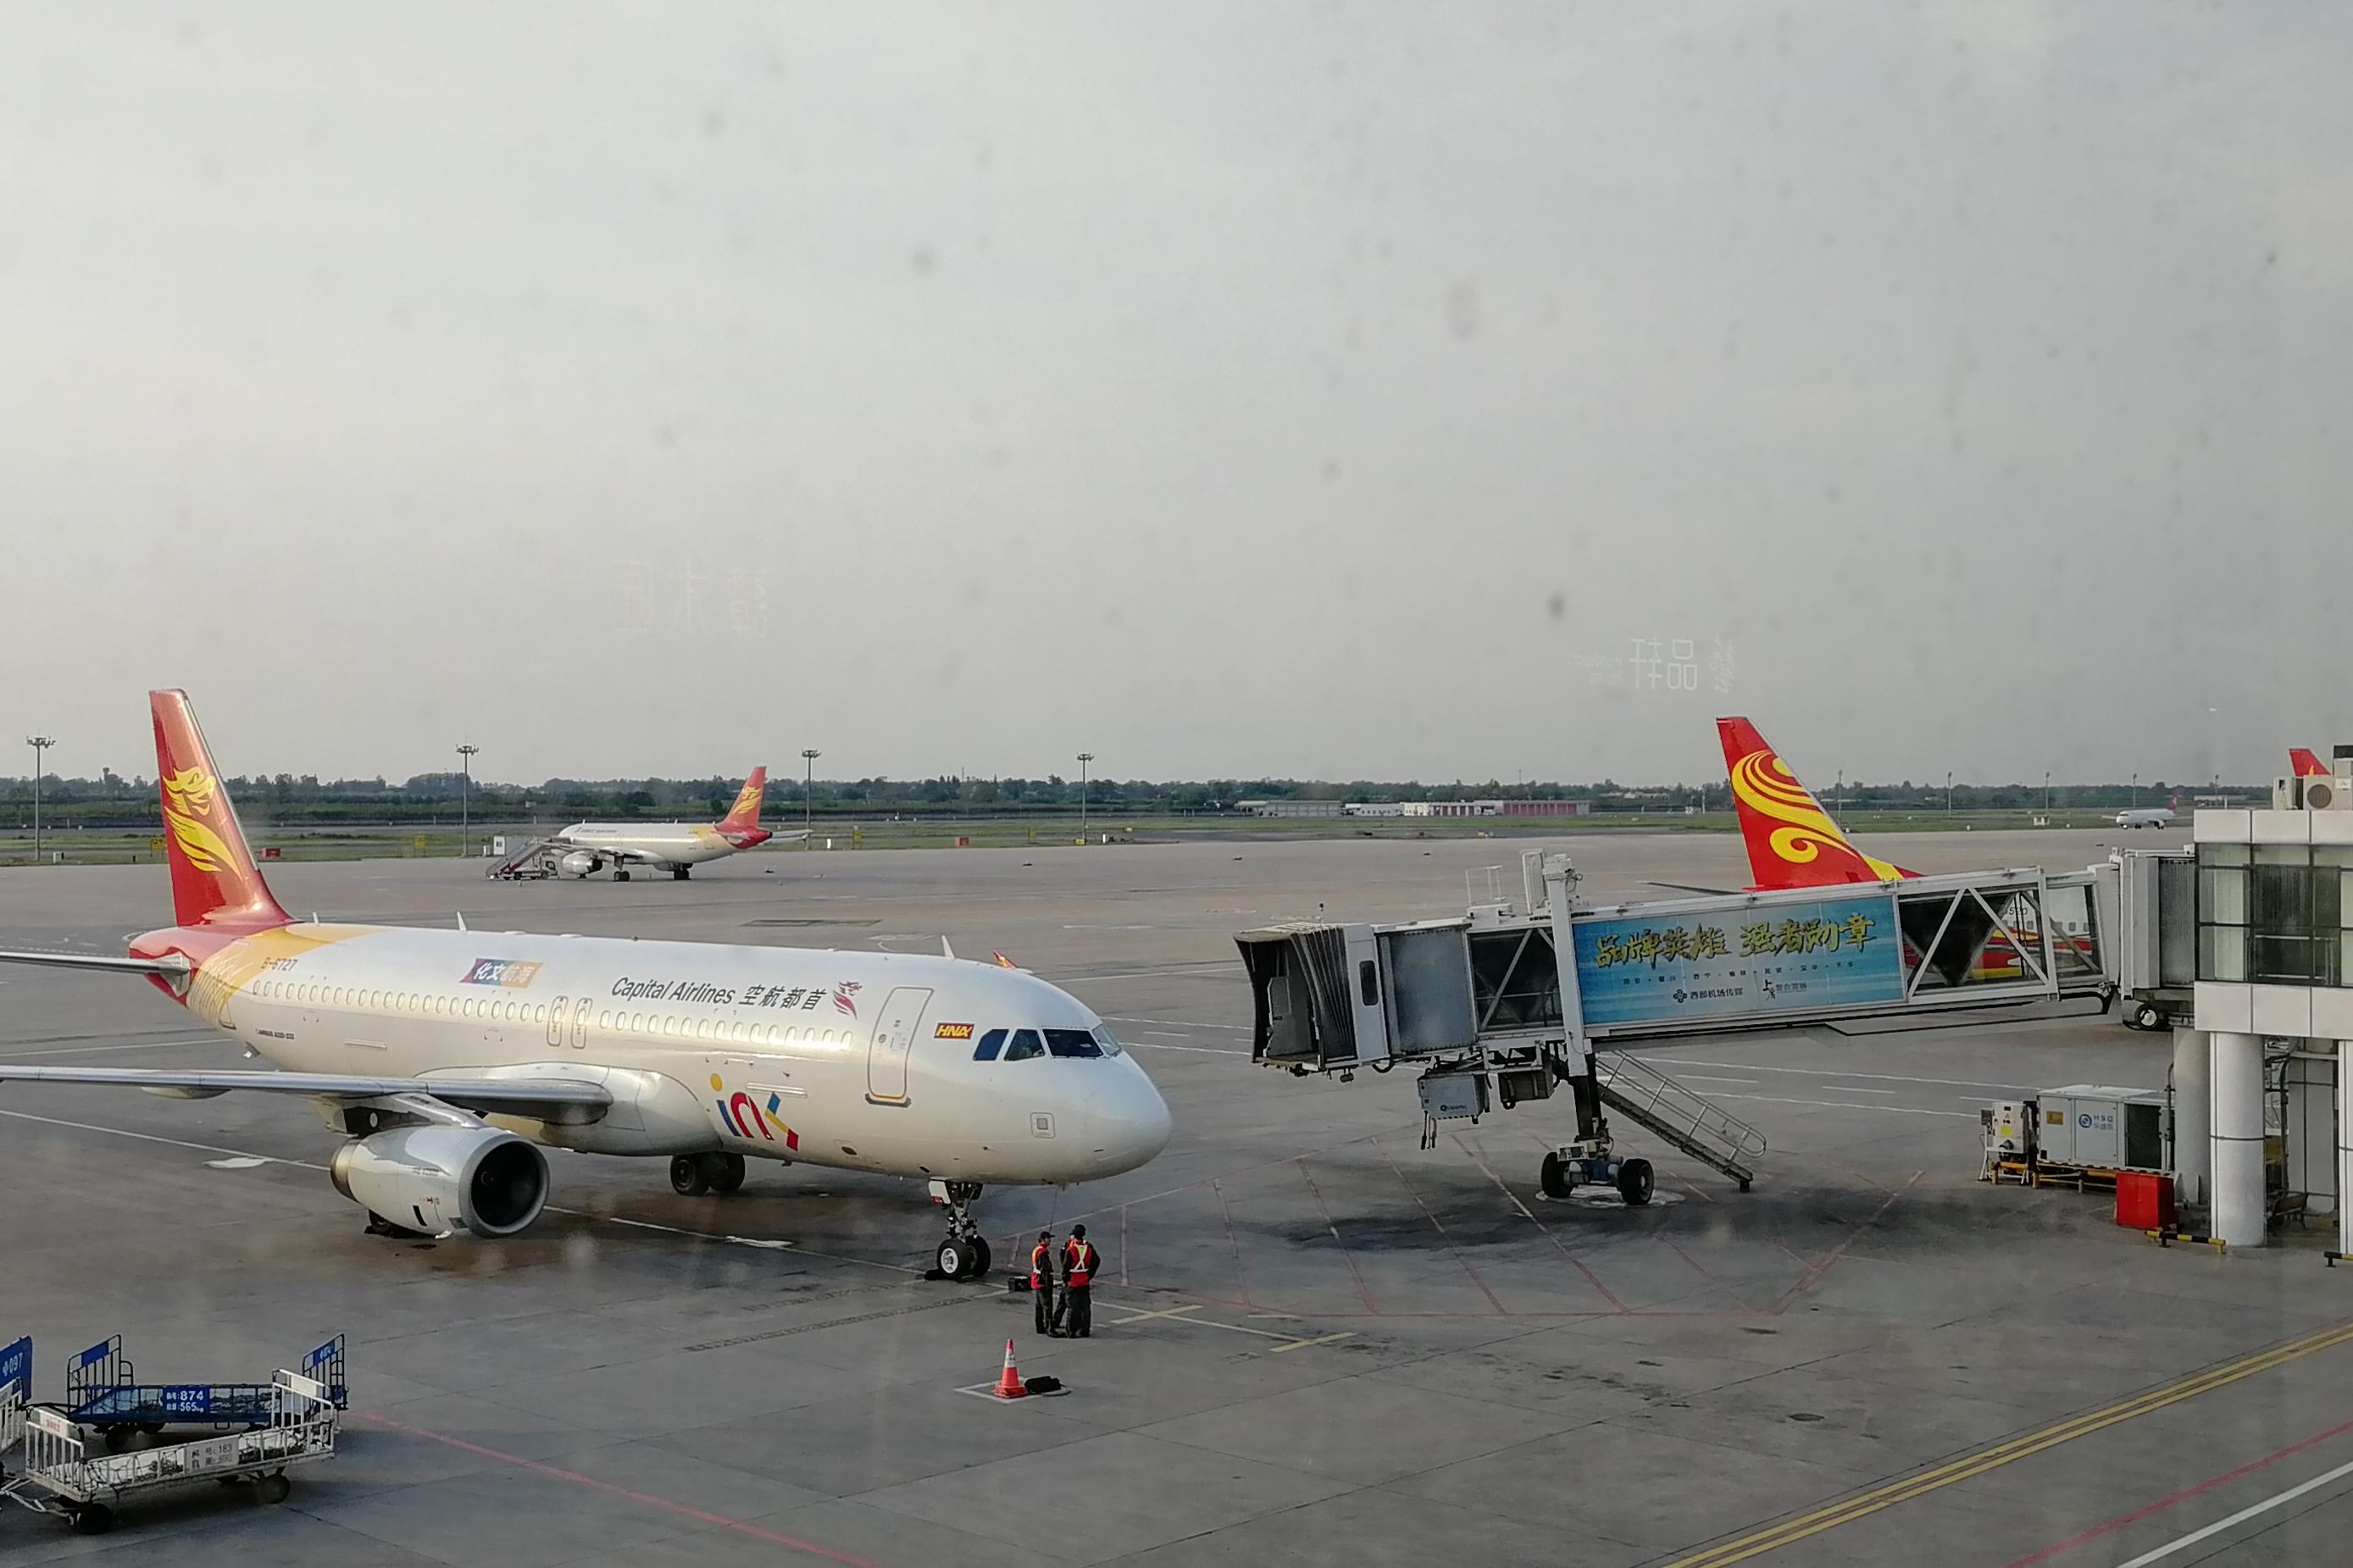 图片 西安咸阳国际机场三期扩建工程初步设计及概算整体获得批复_民航资源网